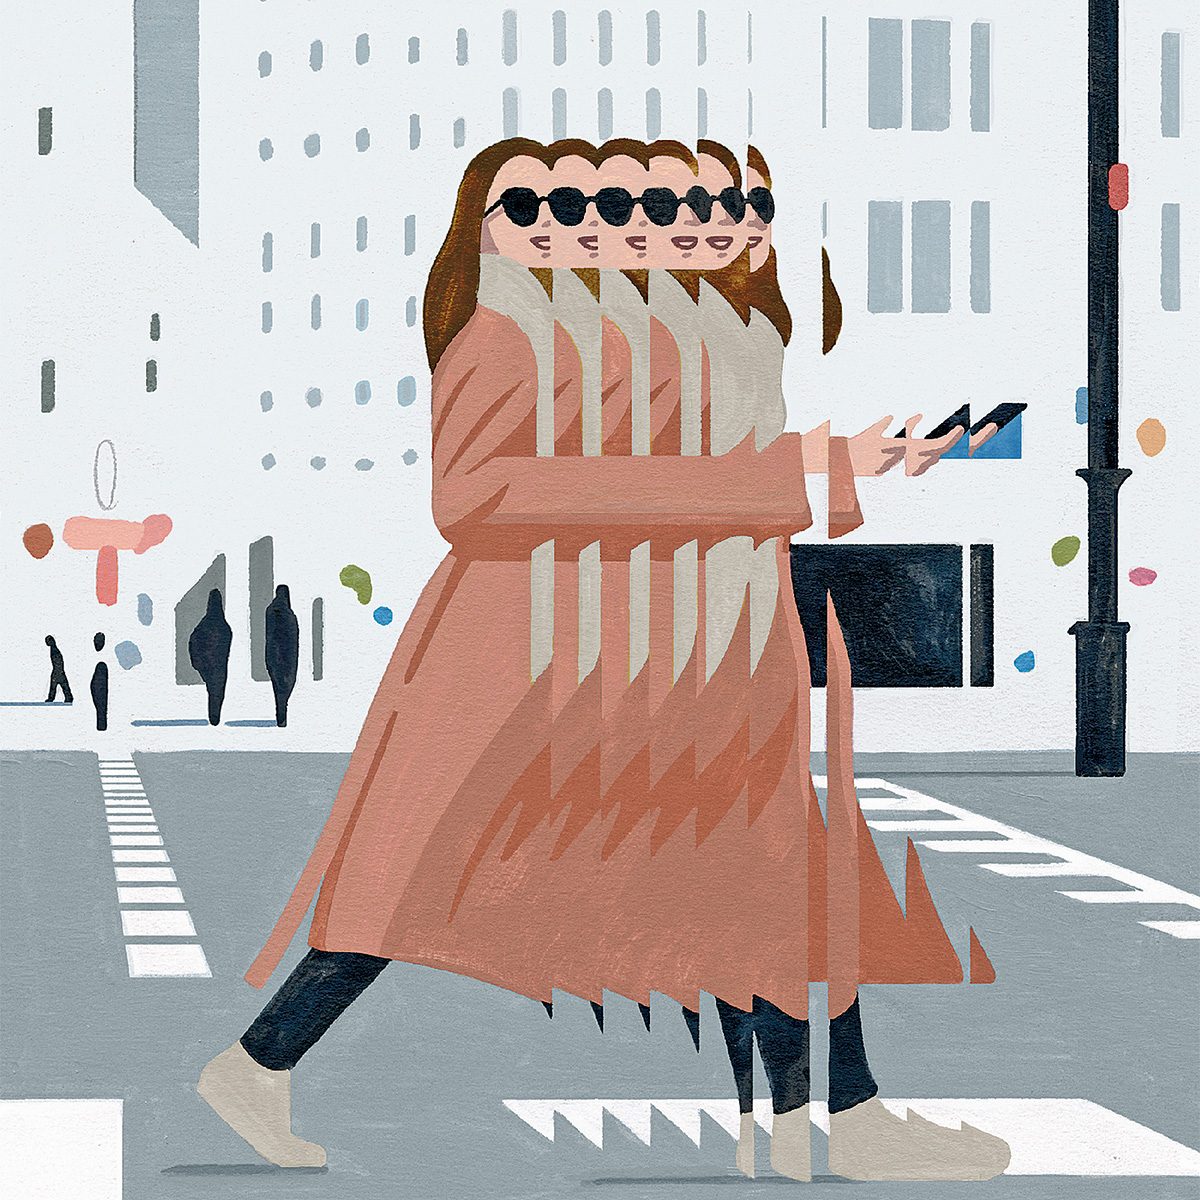 Bgaiement: illustration d'une femme qui marche dans la rue, avec plusieurs ombres d'elle.